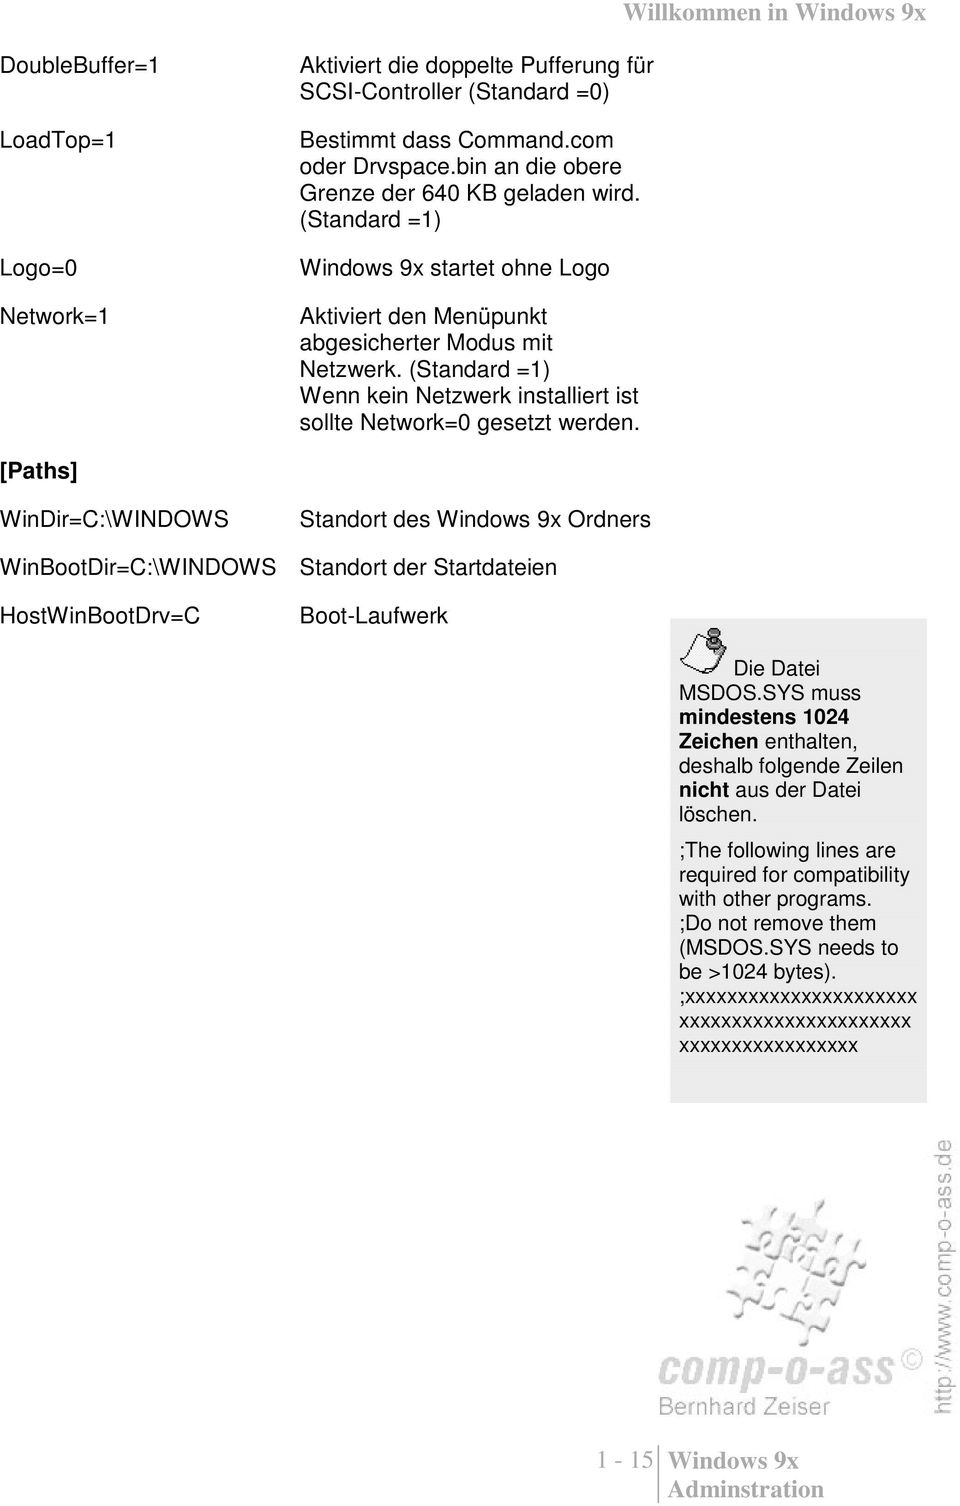 [Paths] WinDir=C:\WINDOWS Standort des Windows 9x Ordners WinBootDir=C:\WINDOWS Standort der Startdateien HostWinBootDrv=C Boot-Laufwerk Die Datei MSDOS.